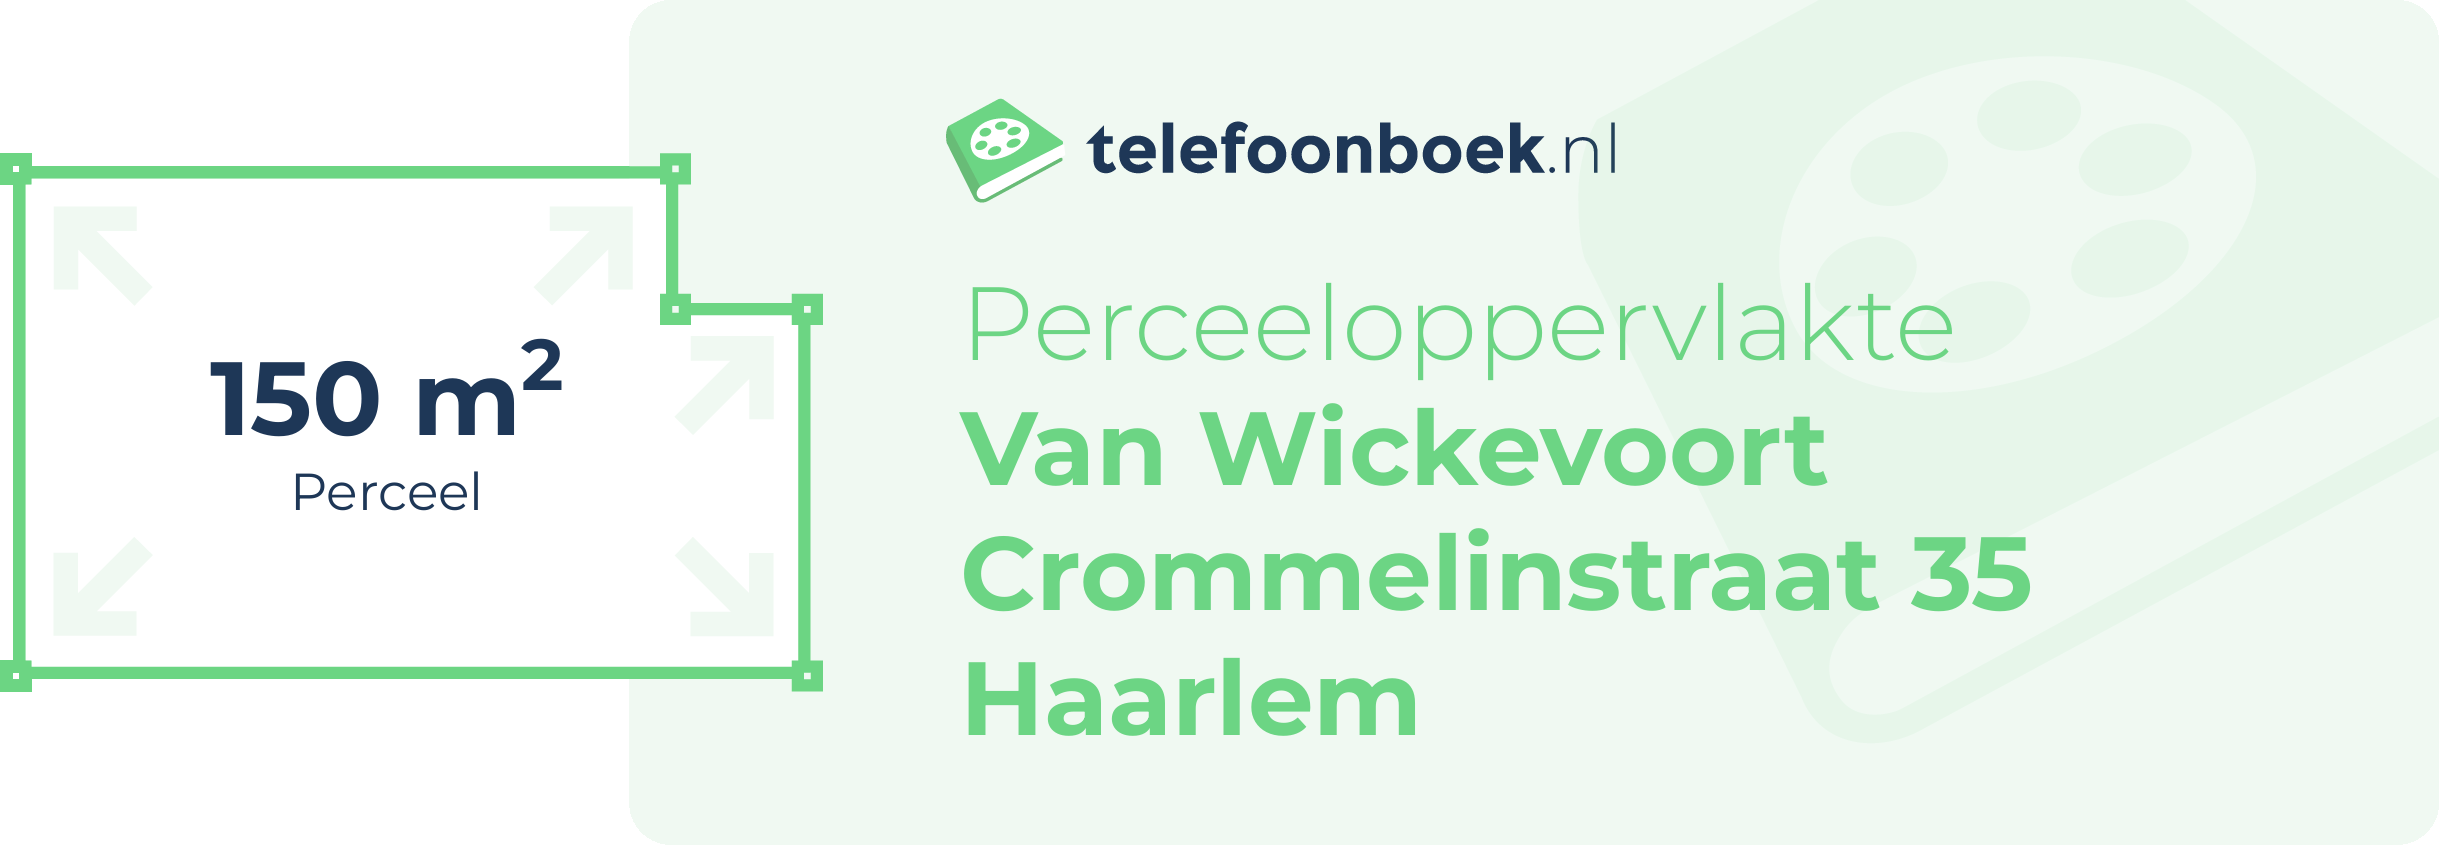 Perceeloppervlakte Van Wickevoort Crommelinstraat 35 Haarlem